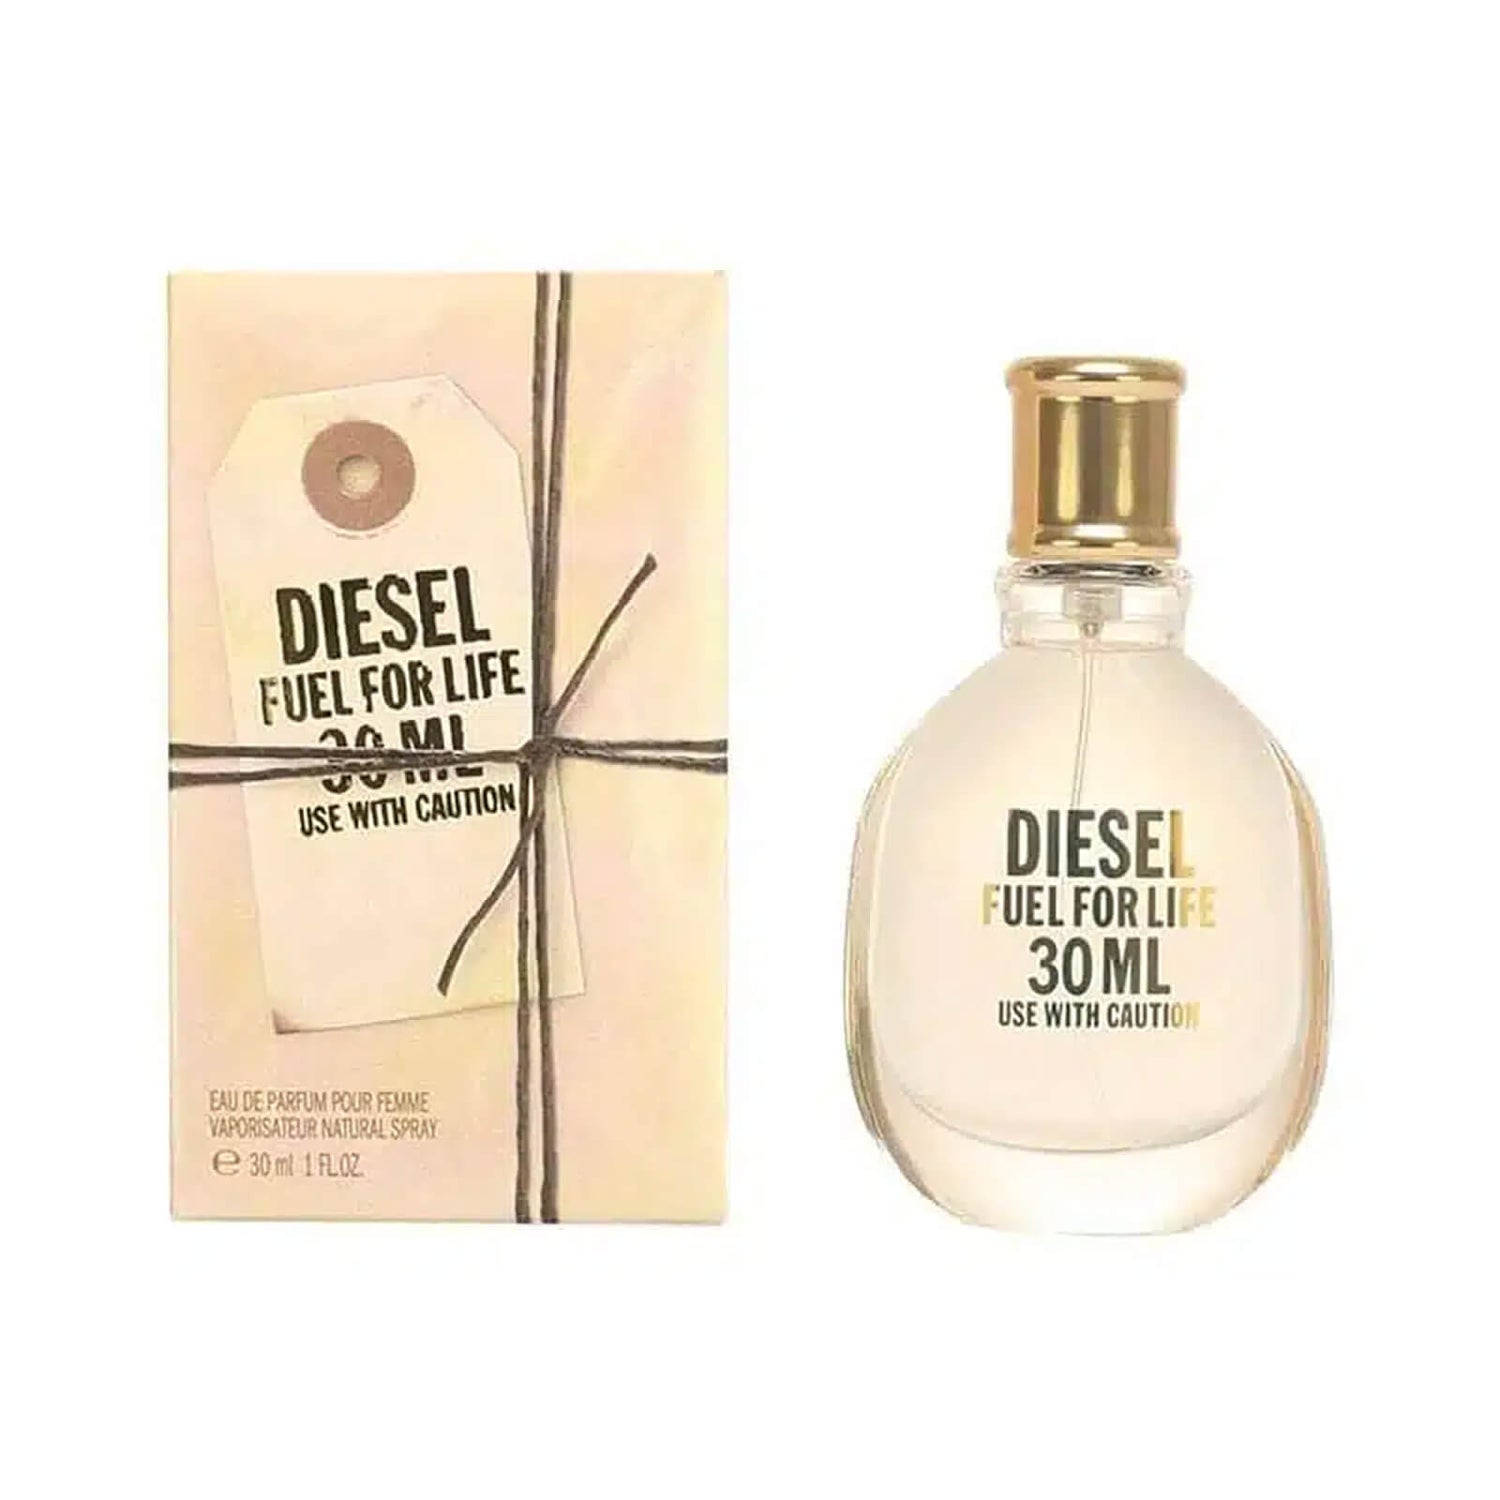 Diesel Fuel for Life Eau de Parfum 30ml Diesel Fuel for Life - parfémovaná voda 30 ml